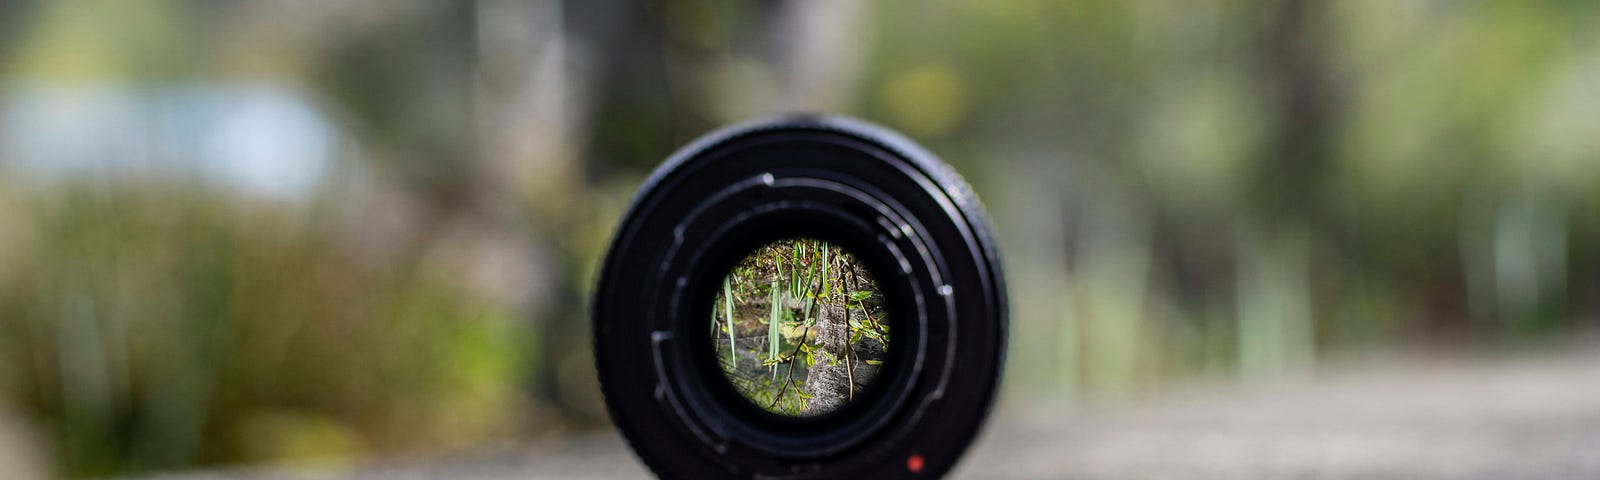 A focused view through a lens.